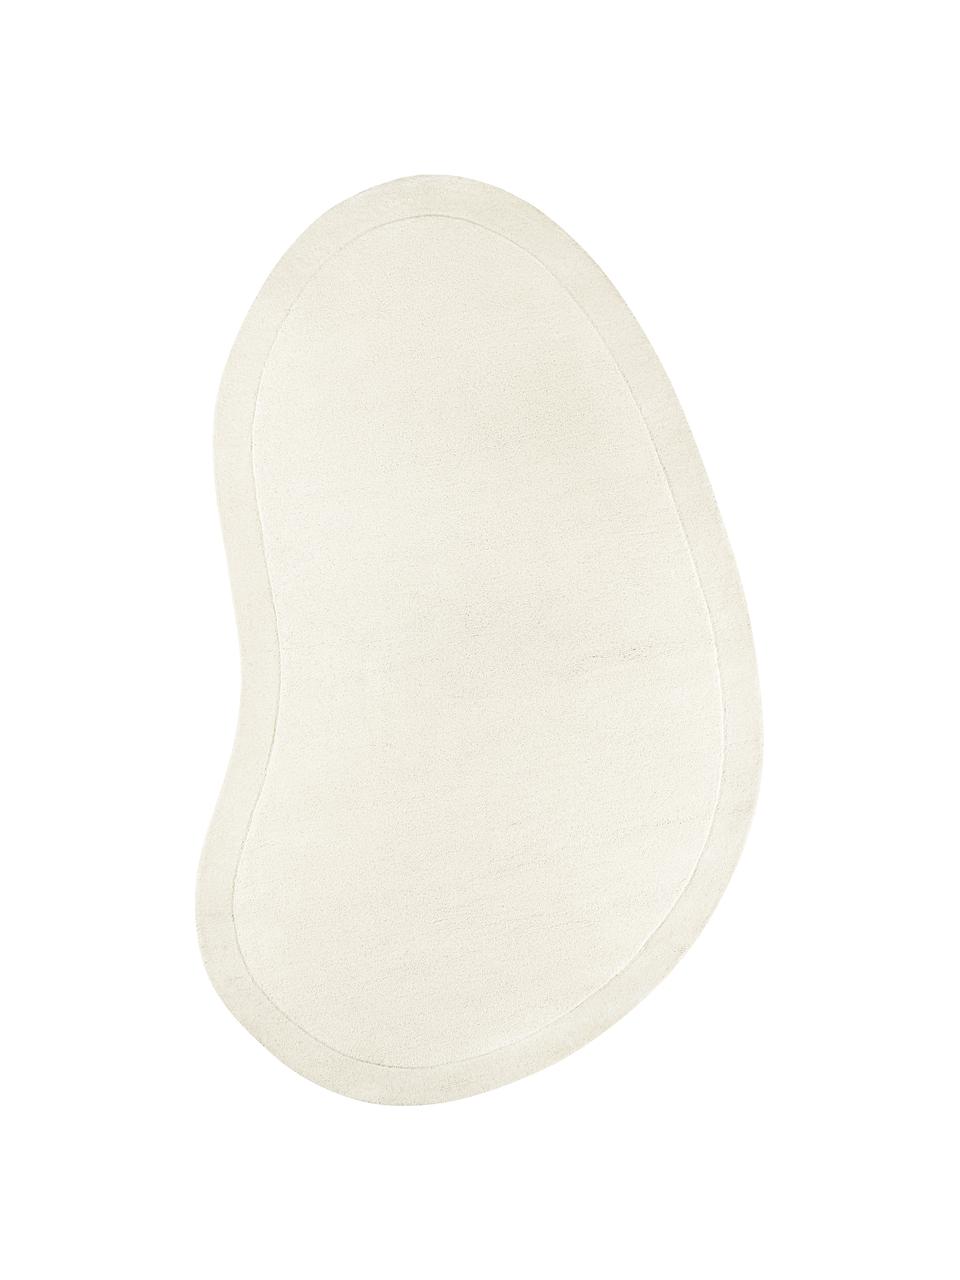 Tappeto in lana bianco crema taftato a mano dalla forma organica Kadey, Retro: 100% cotone Nel caso dei , Bianco crema, Larg. 150 x Lung. 230 cm (taglia M)